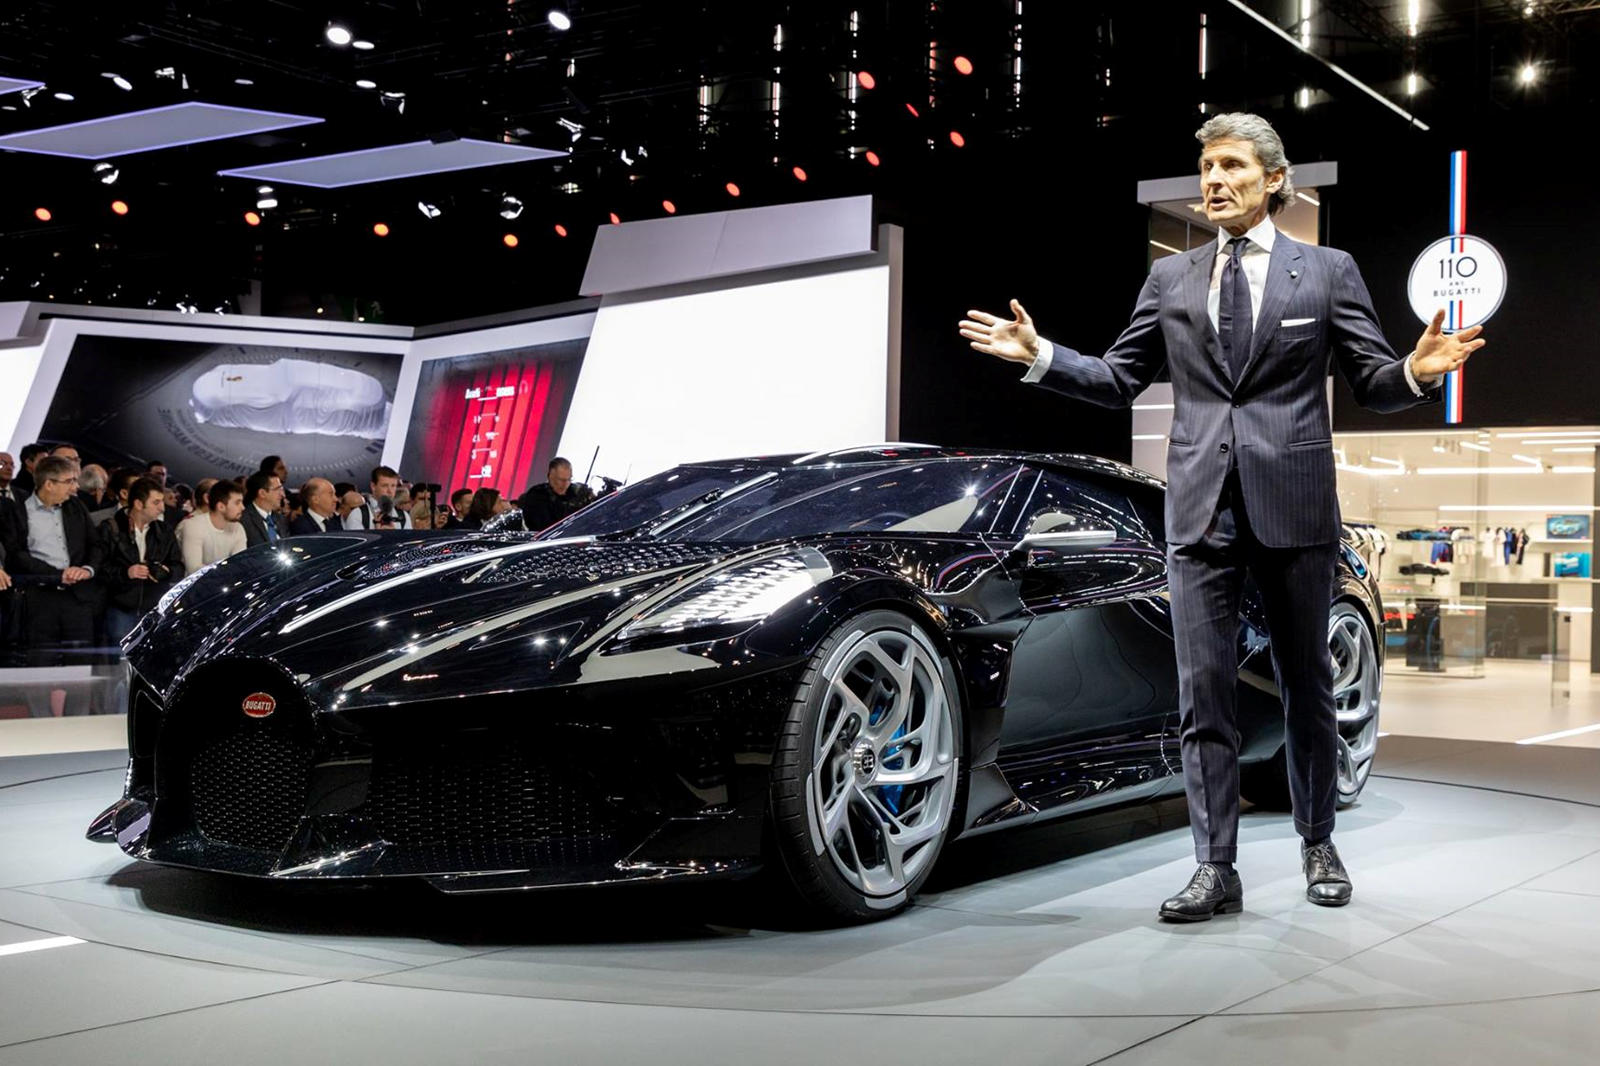 Первое время, когда Винкельманн возглавлял Lamborghini с 2005 по 2016 год, было очень успешным, поскольку он превратил относительно небольшой бренд в крупного игрока на рынке суперкаров.